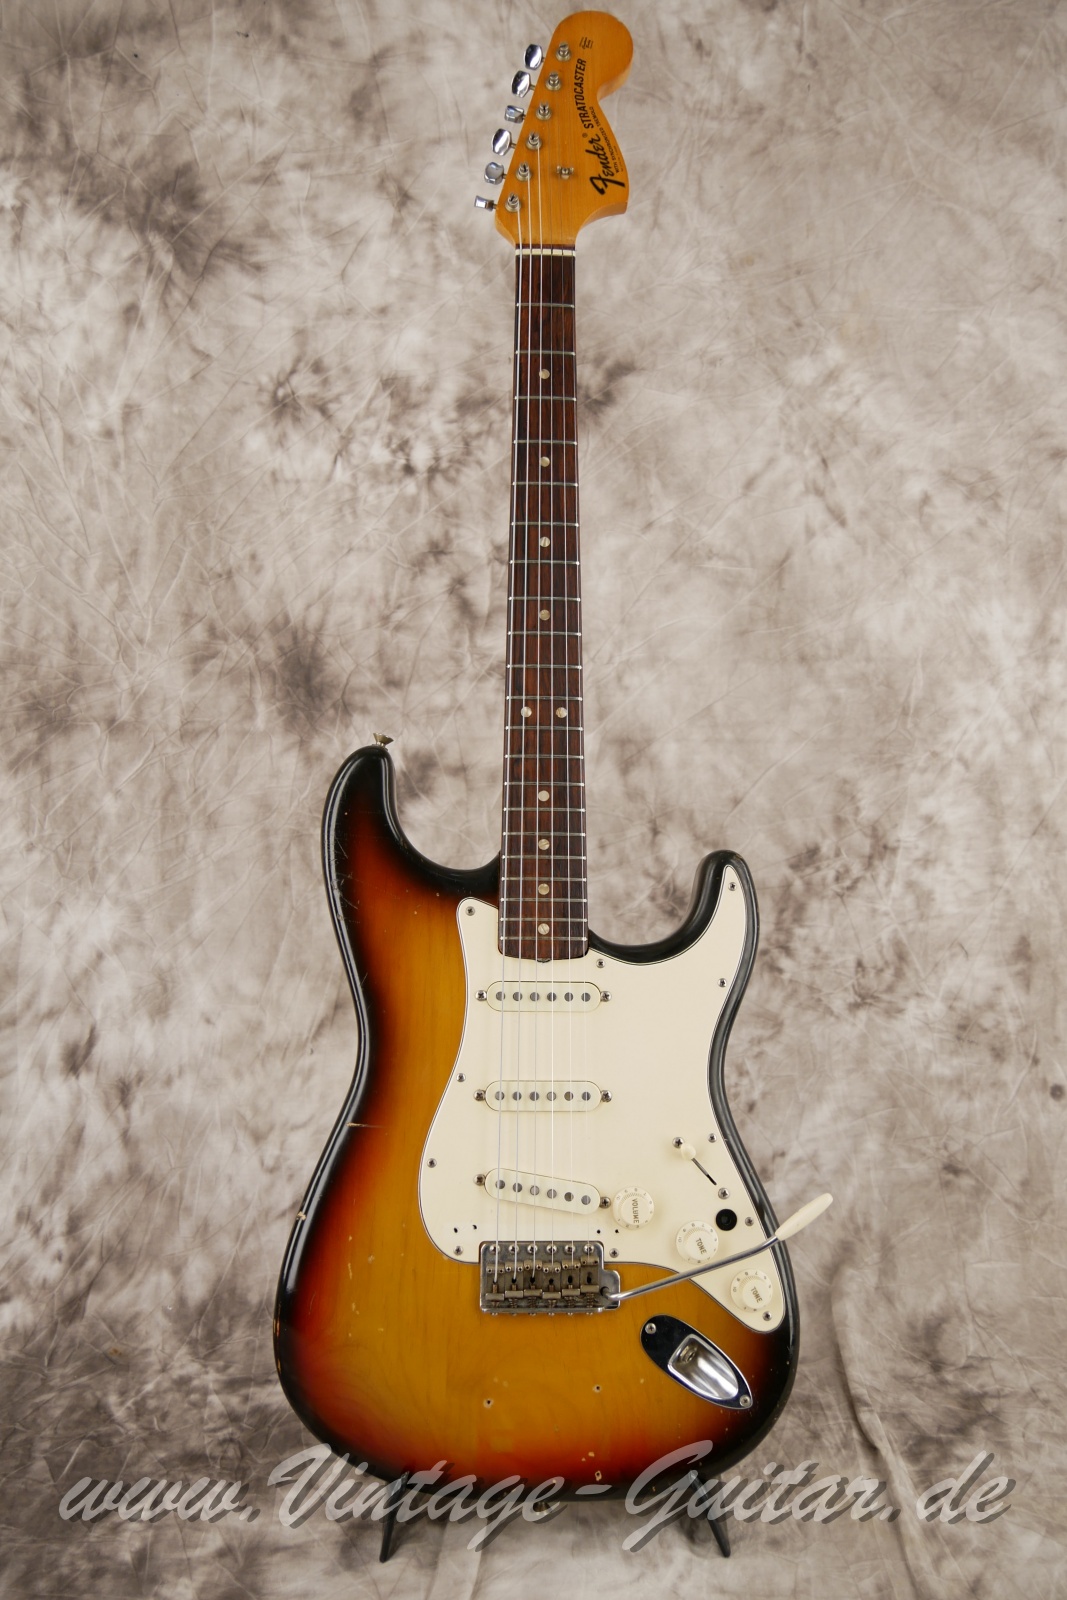 Fender_Stratocaster_sunburst_4hole_1971-001.JPG